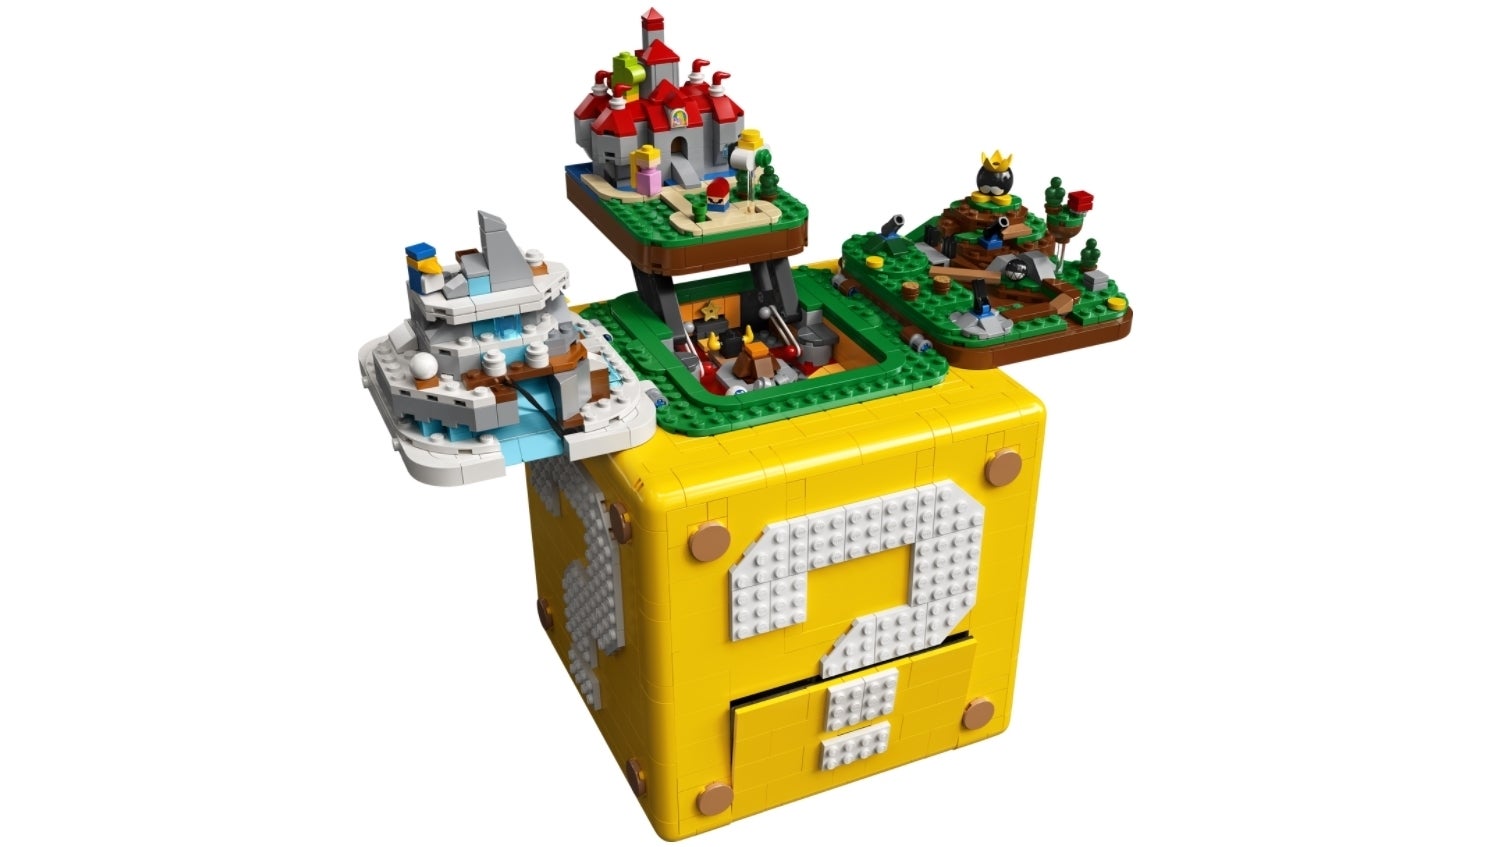 Afbeeldingen van Lego Super Mario 64 set onthuld